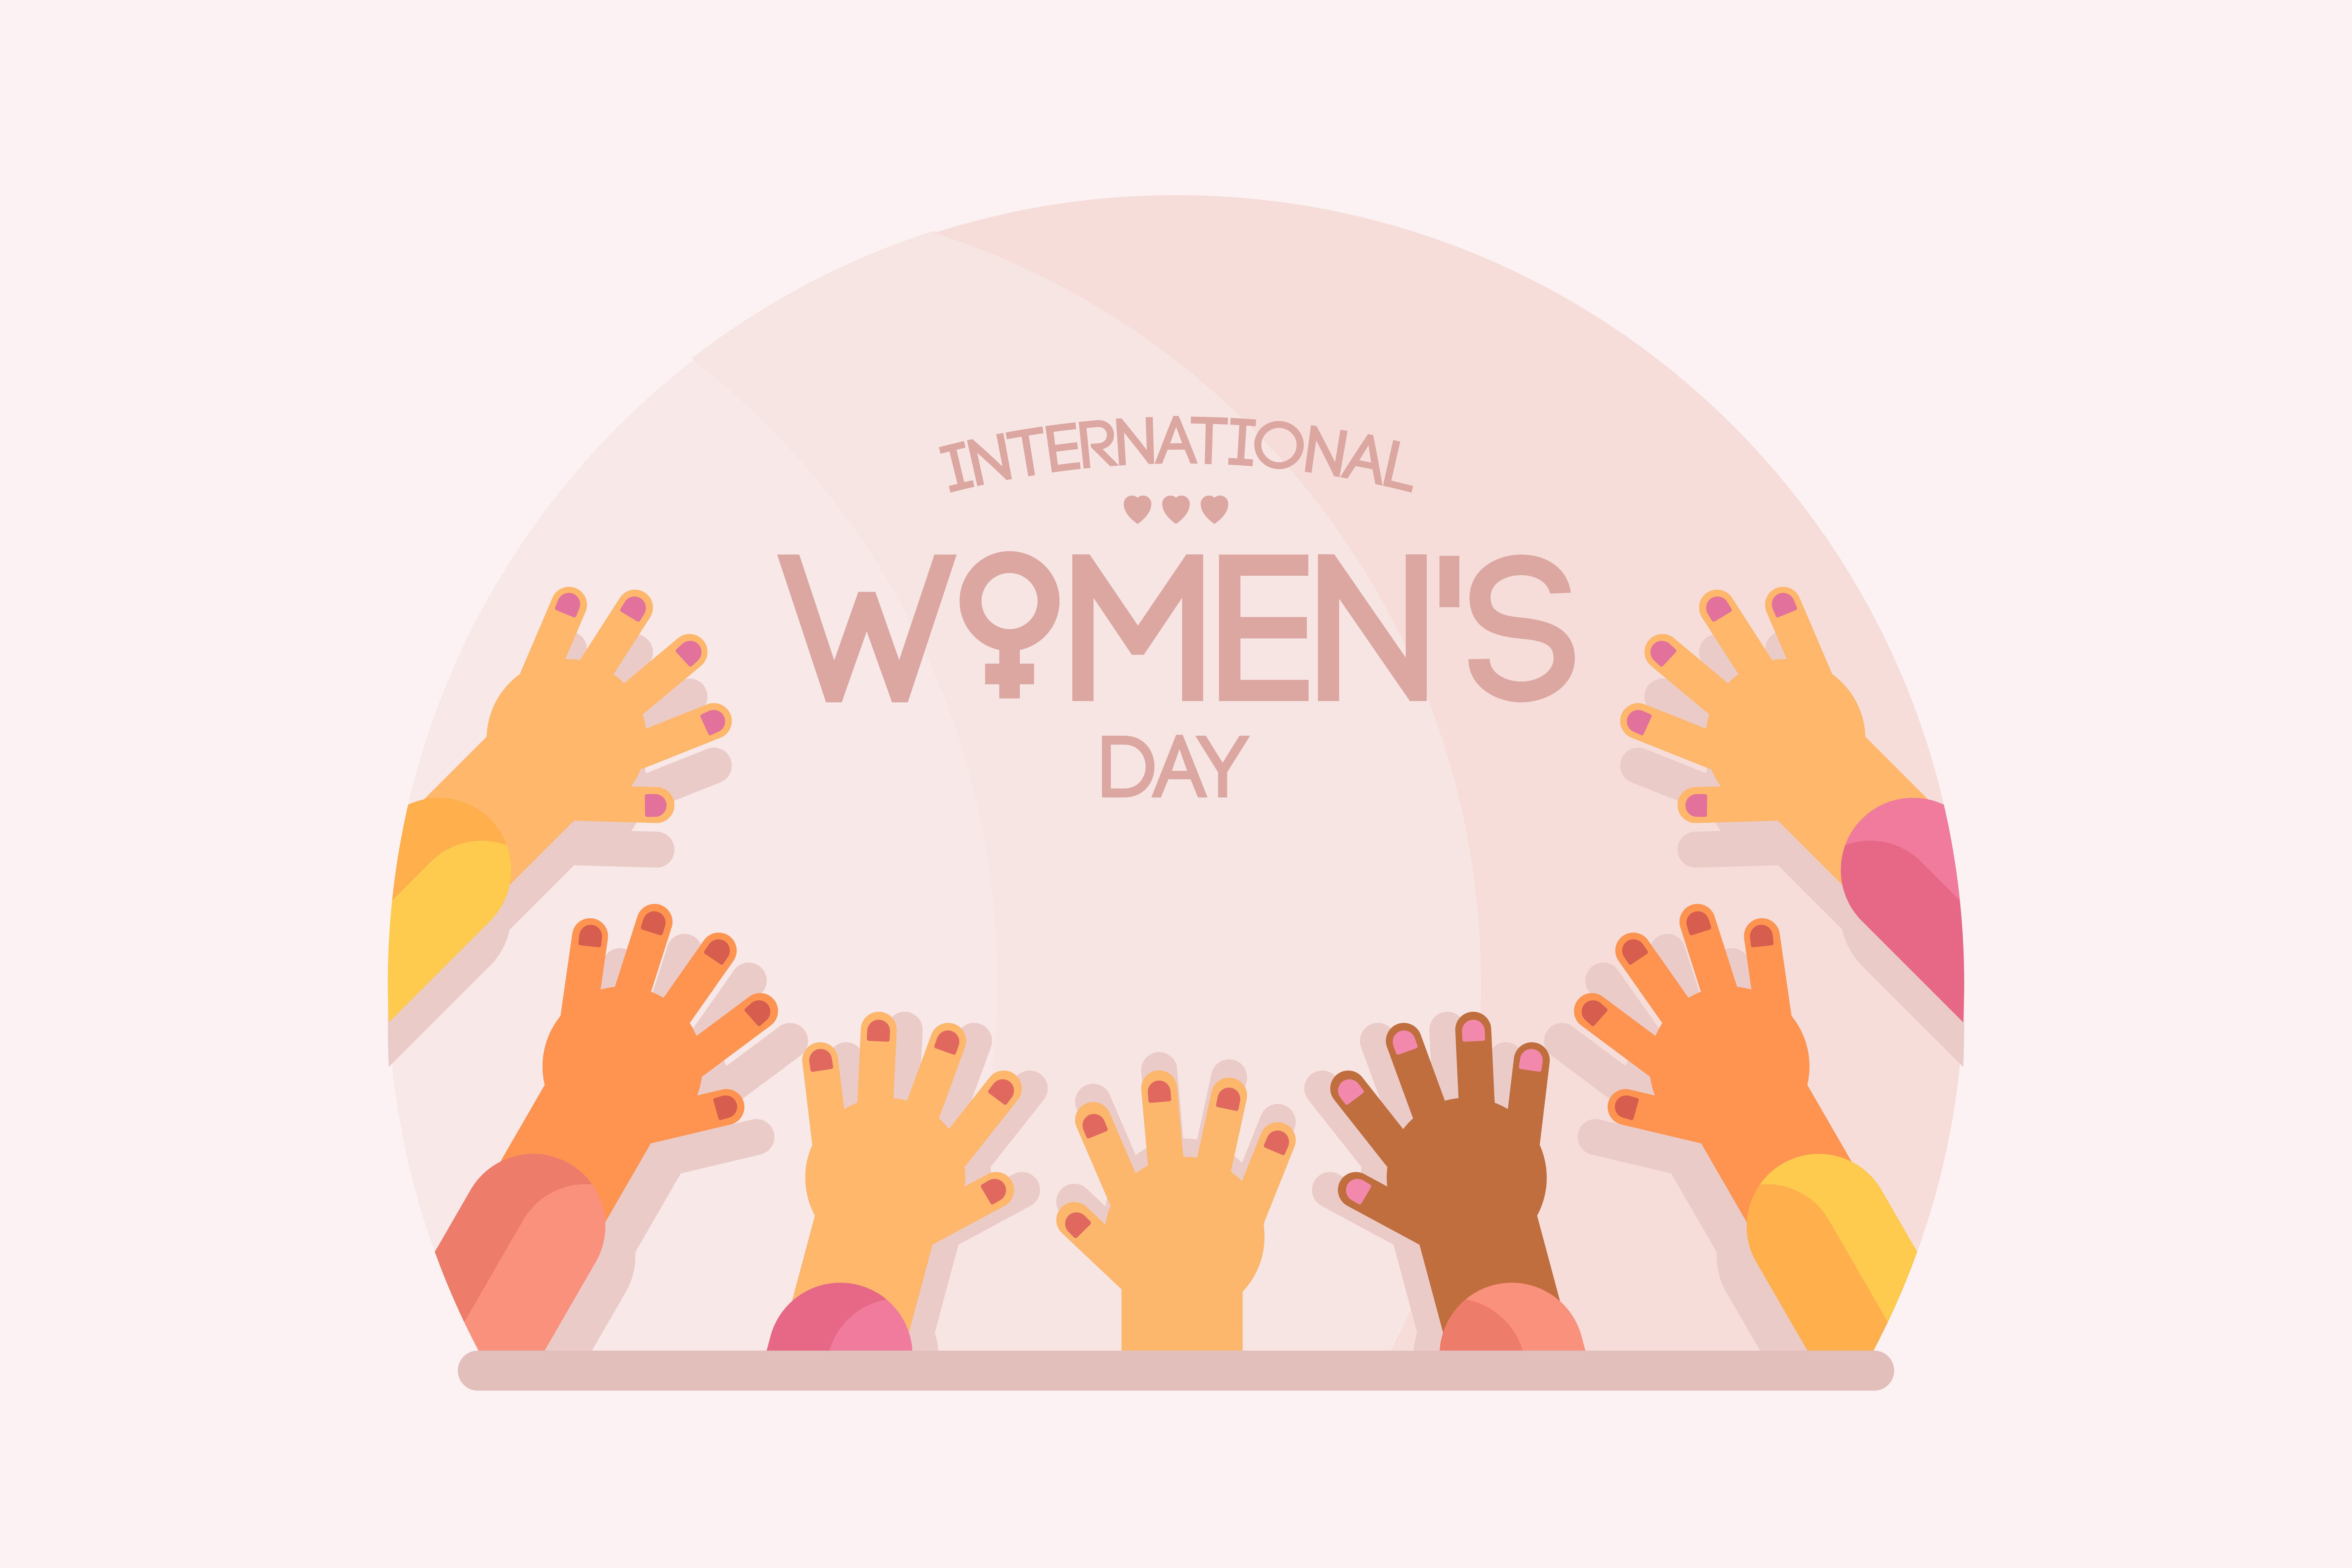 multicultural women's hands, "International Women's Day"